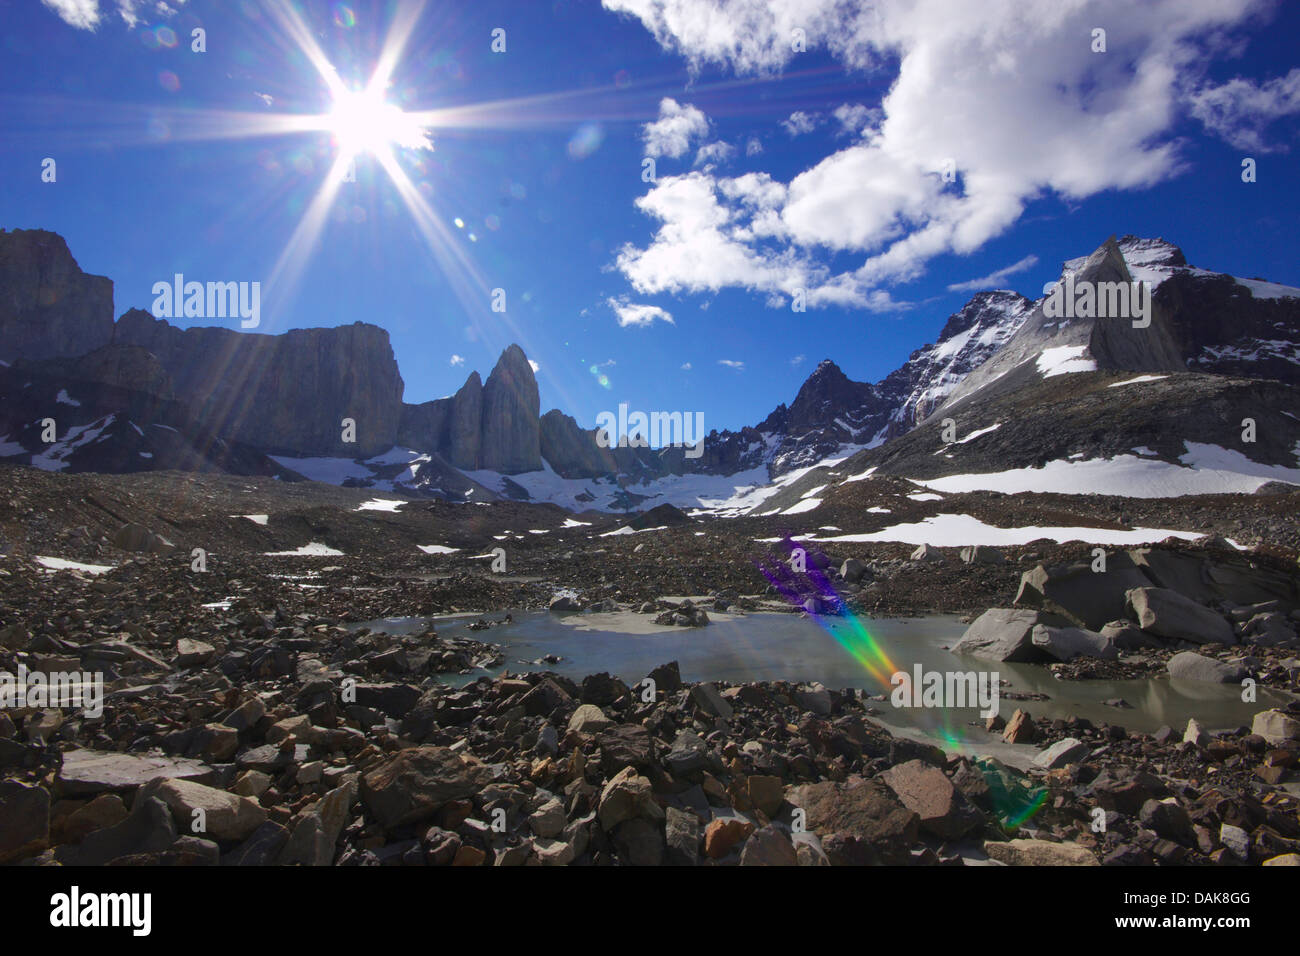 La Valle del Frances, Cerro Catedral e Aleta de Tiburon in background, Cile, Patagonia, parco nazionale Torres del Paine Foto Stock